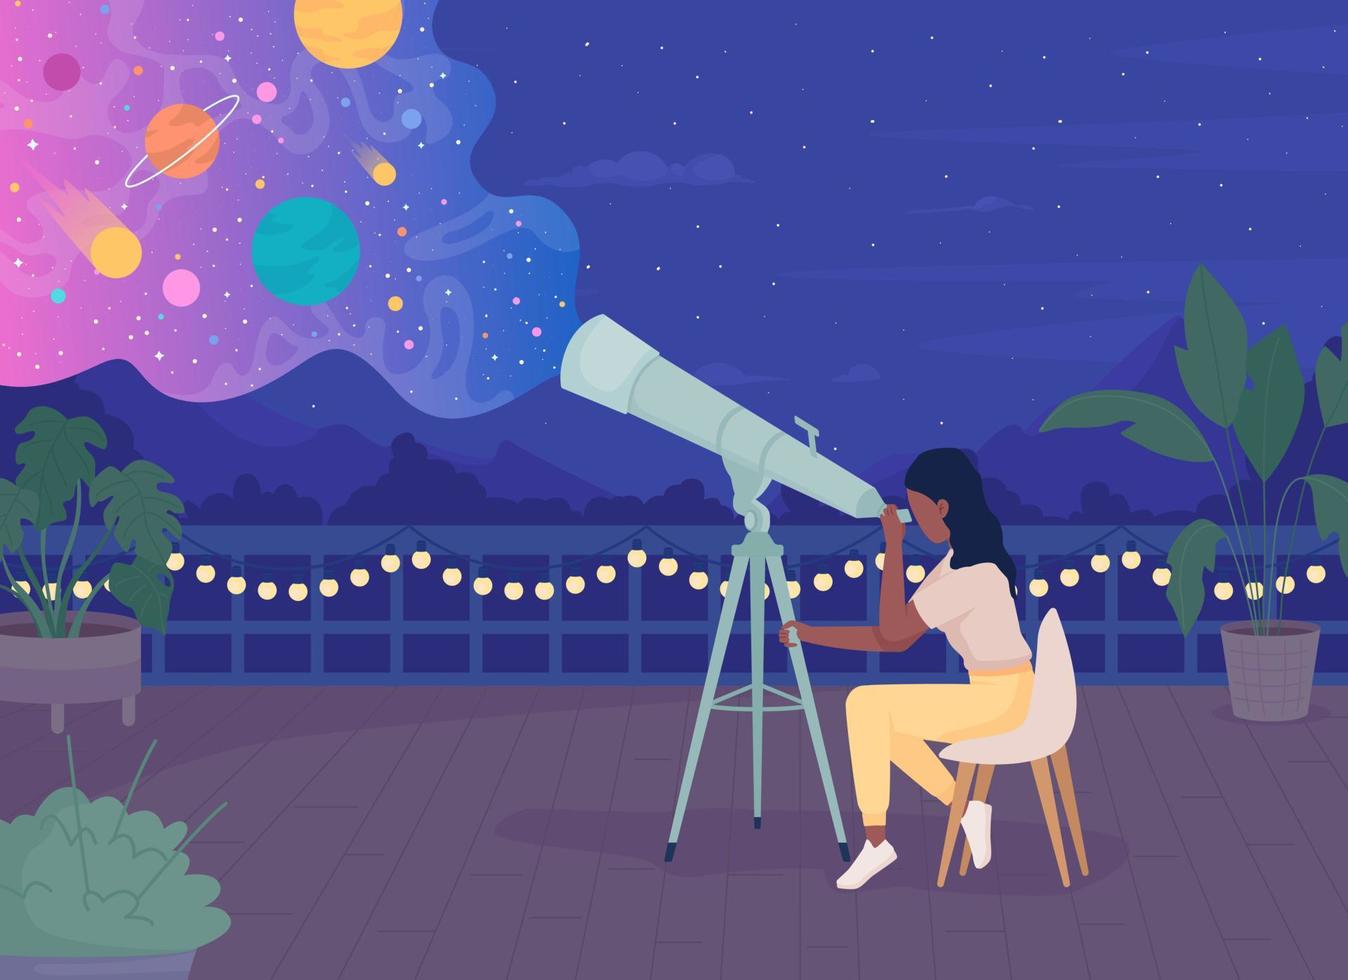 donna con telescopio godendo di osservare le stelle sul tetto di notte illustrazione vettoriale a colori piatti